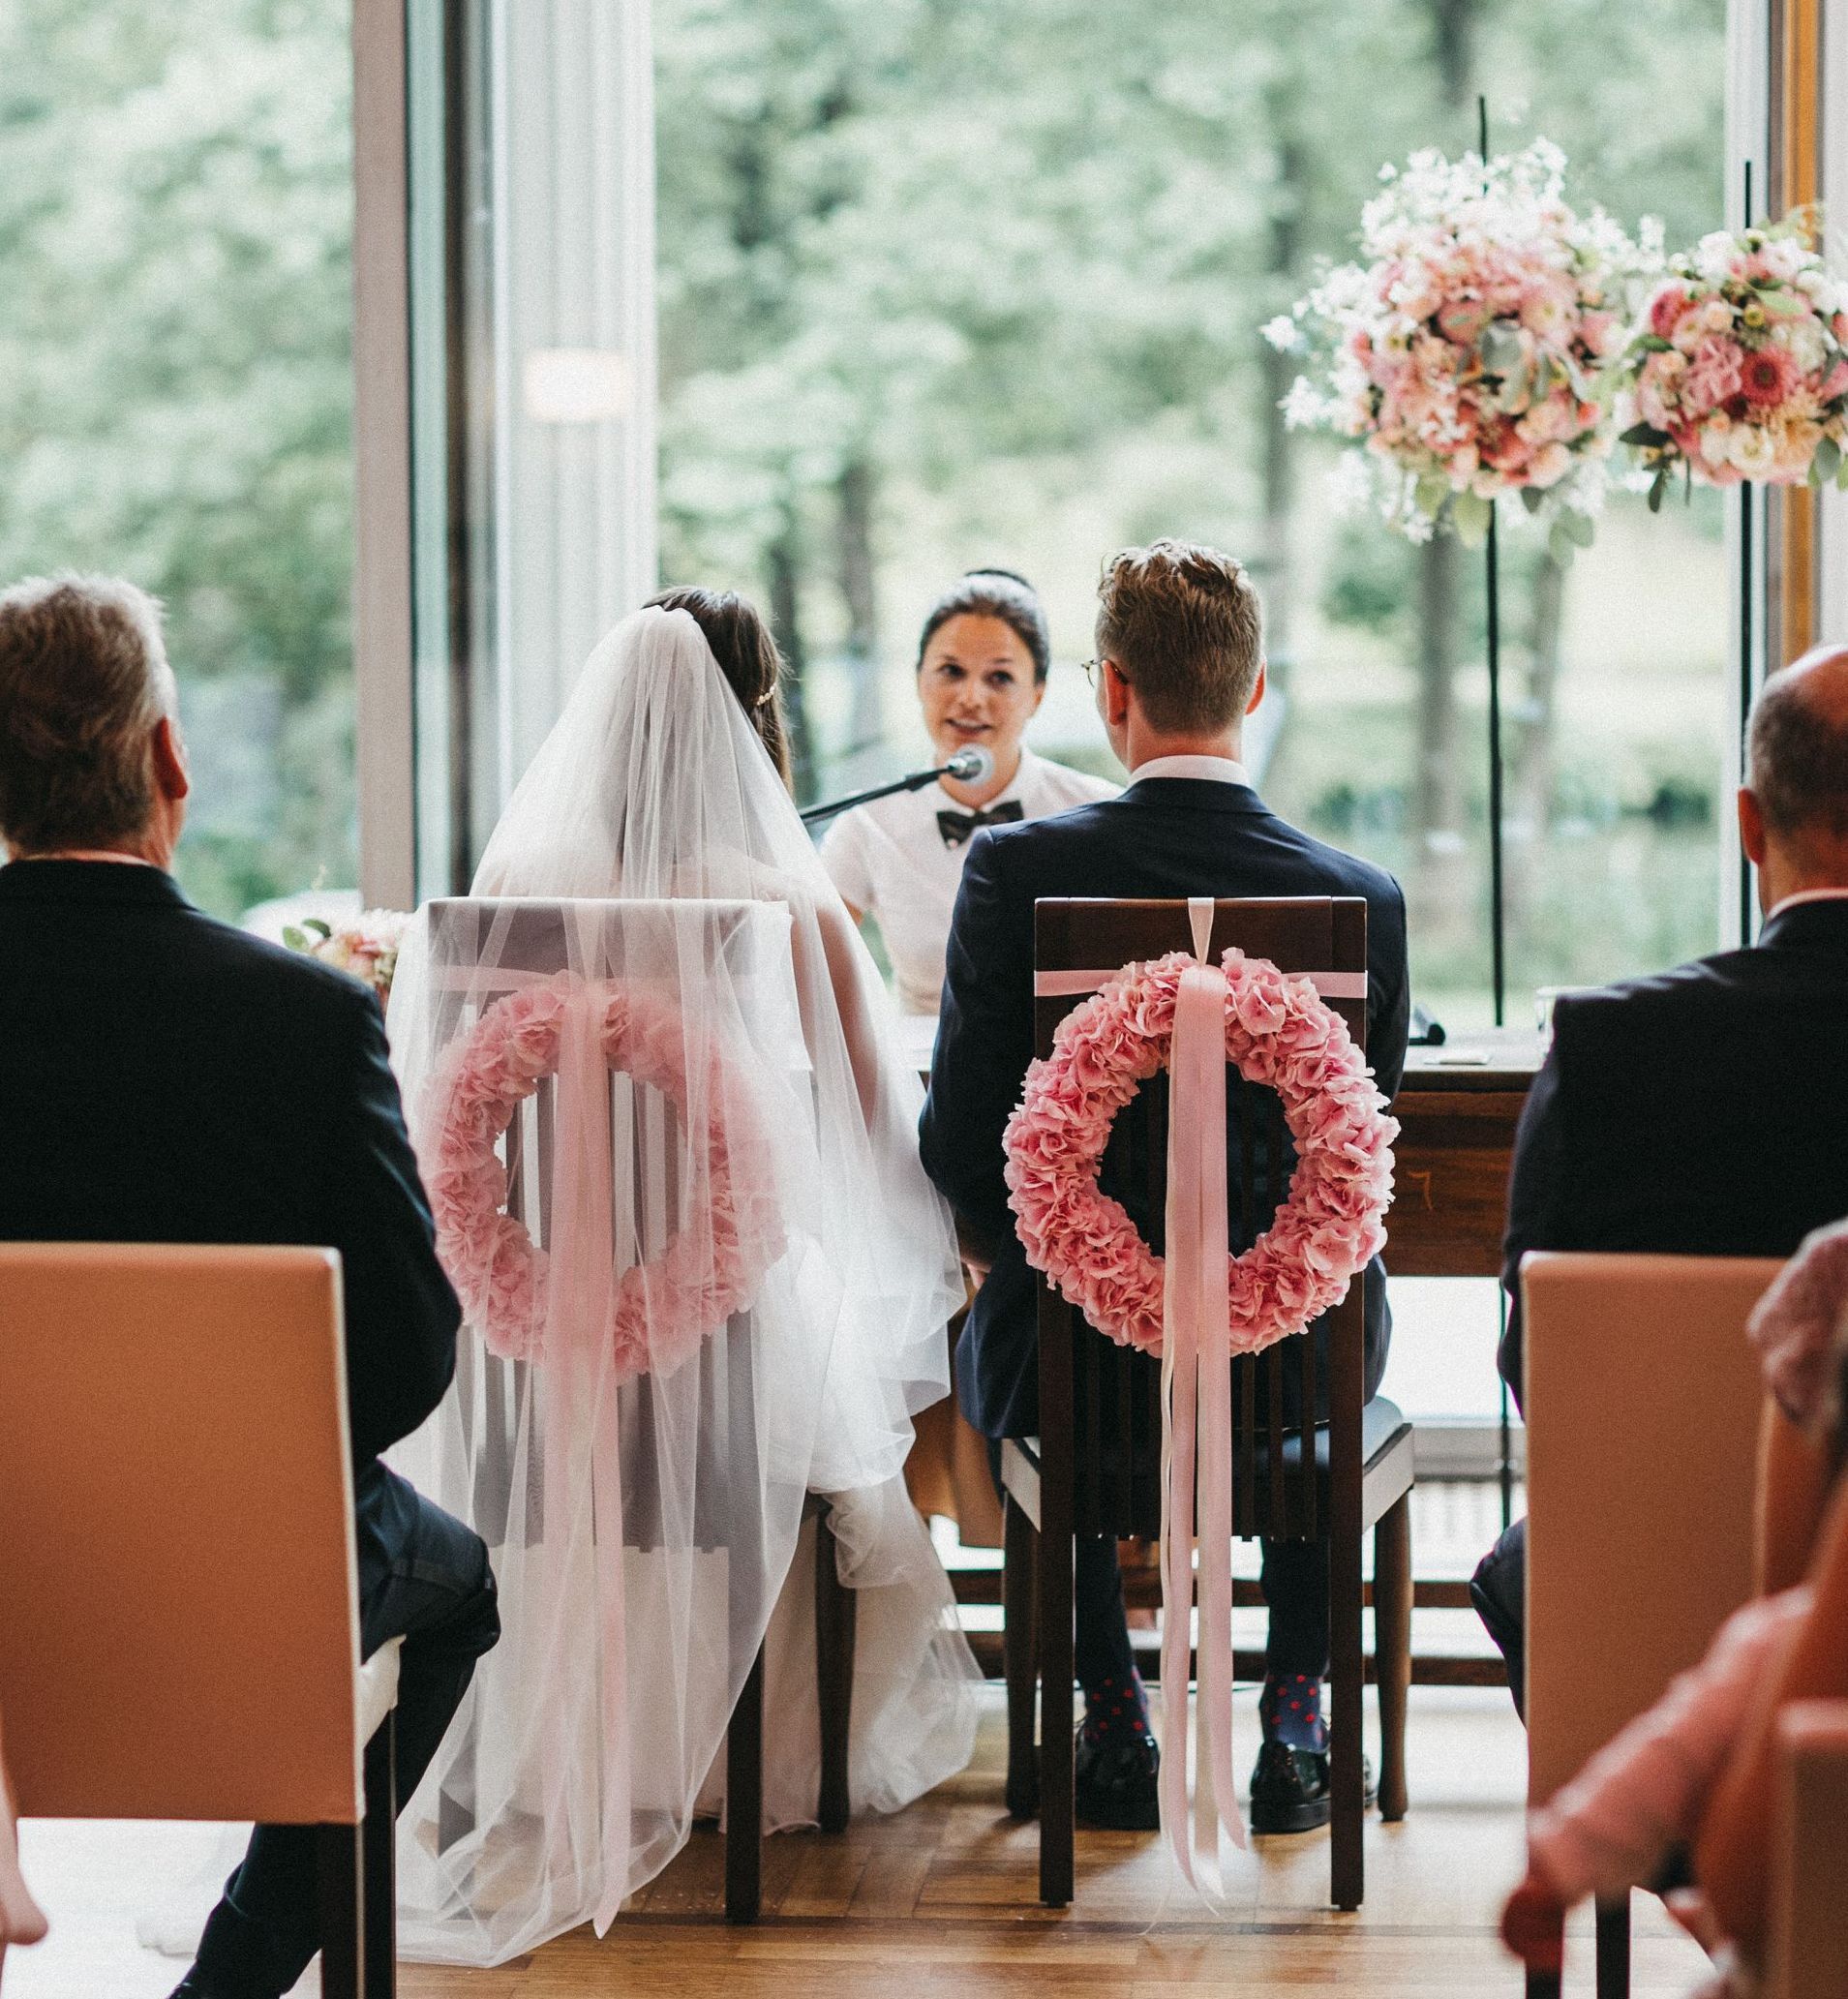 Zu sehen ist eine Freie Trauung in Hamburg. Das Brautpaar sitzt mit dem Rücken zu den Gästen auf Stühlen, die mit wunderschönen rosafarbenen Hortensienkränzen geschmückt sind.